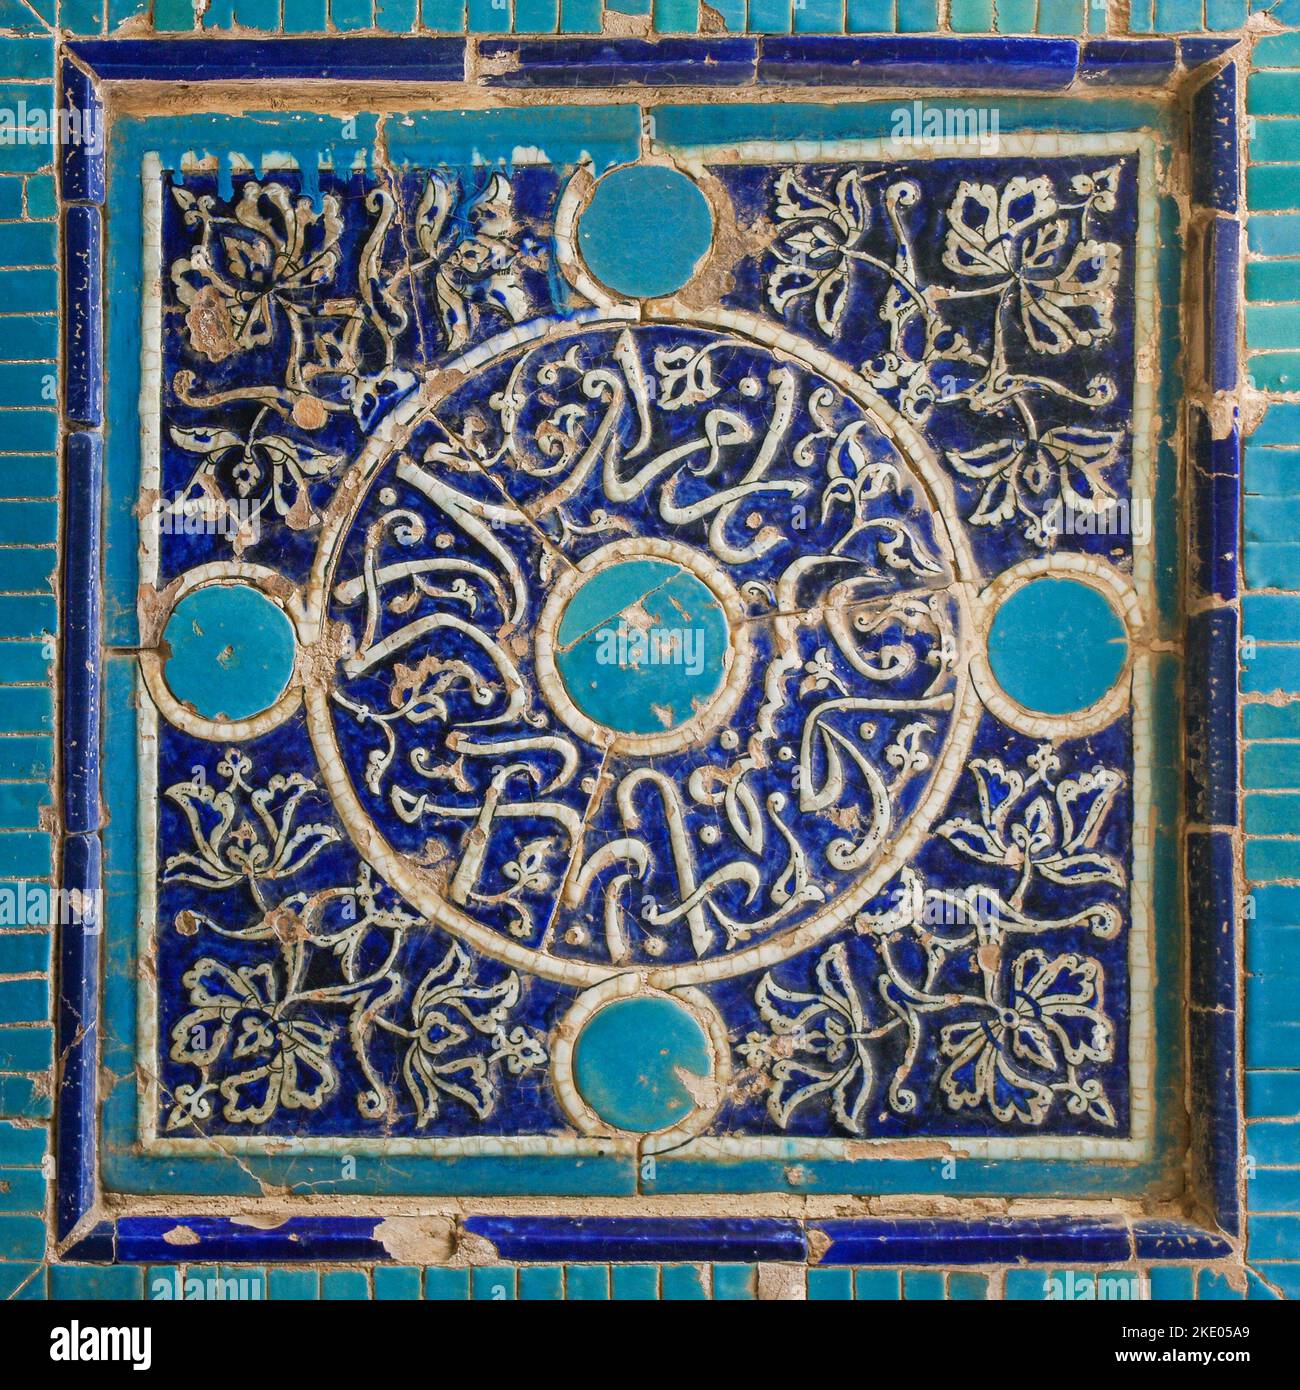 Décoration florale et géométrique bleue et turquoise sur le mur du mausolée islamique à la nécropole de Shah-i-Zinda, classée au patrimoine mondial de l'UNESCO, Samarkand, Ouzbékistan Banque D'Images